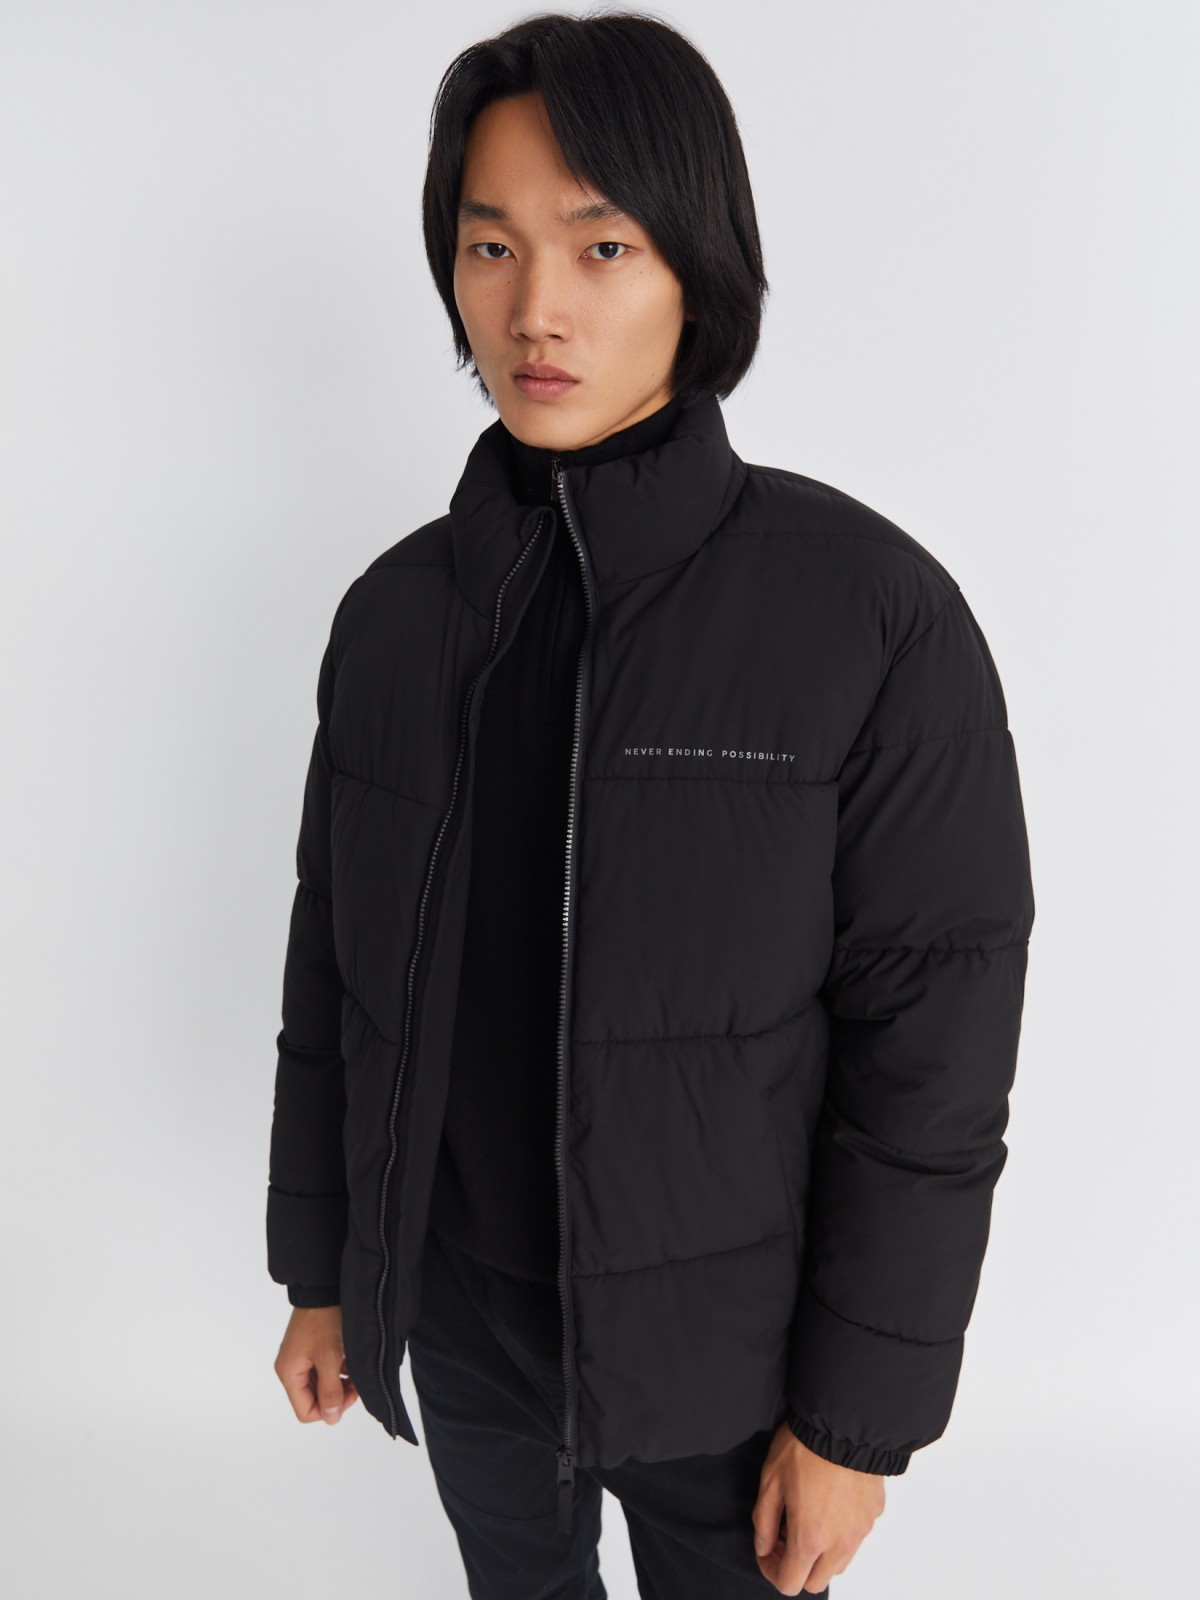 Тёплая стёганая куртка на молнии с воротником-стойкой zolla 01334510L134, цвет черный, размер S